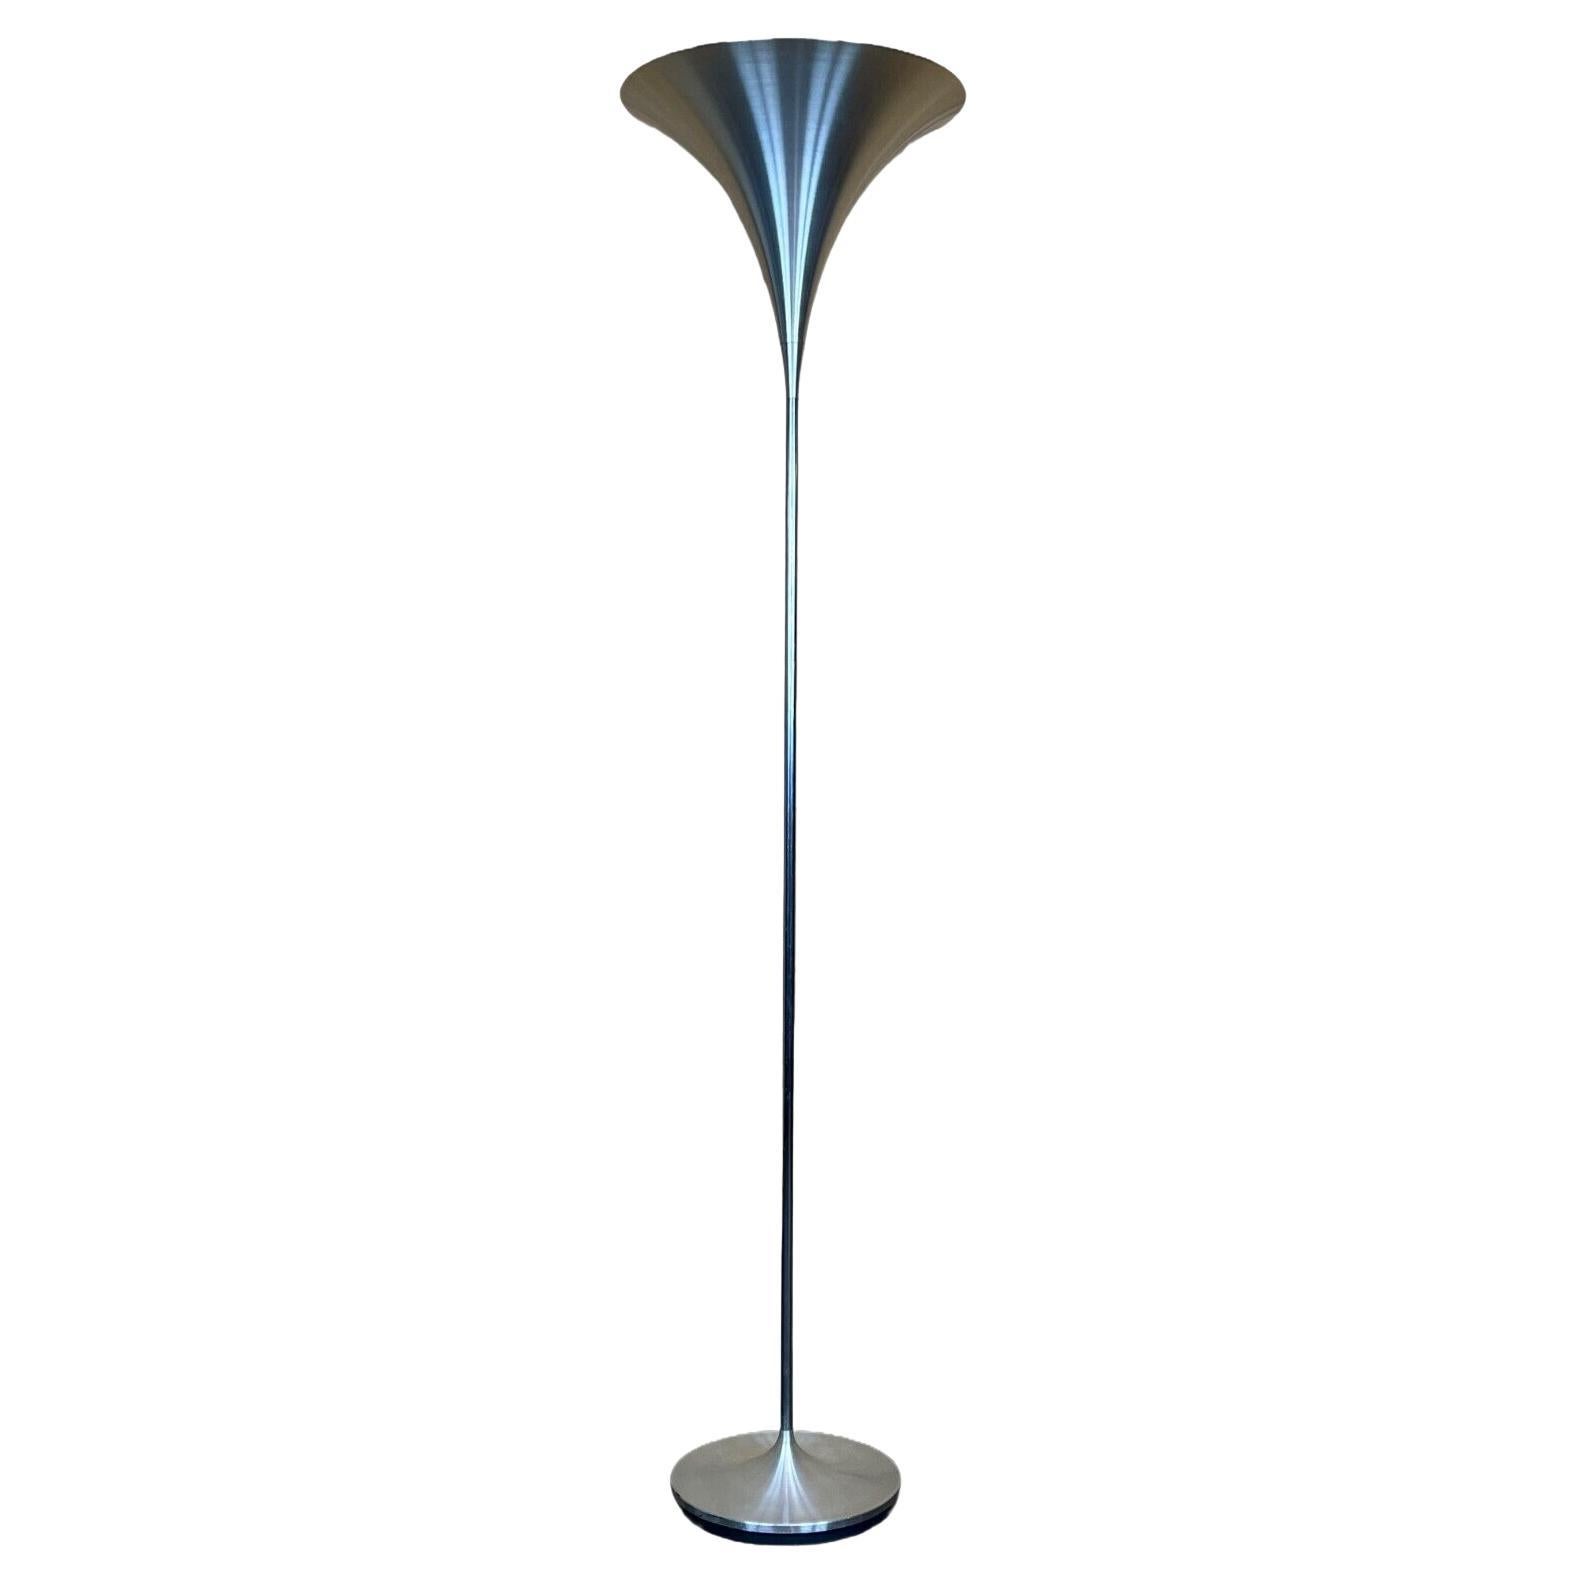 60er 70er Jahre Lampe Stehlampe Aluminium Doria Lampen Space Age Design